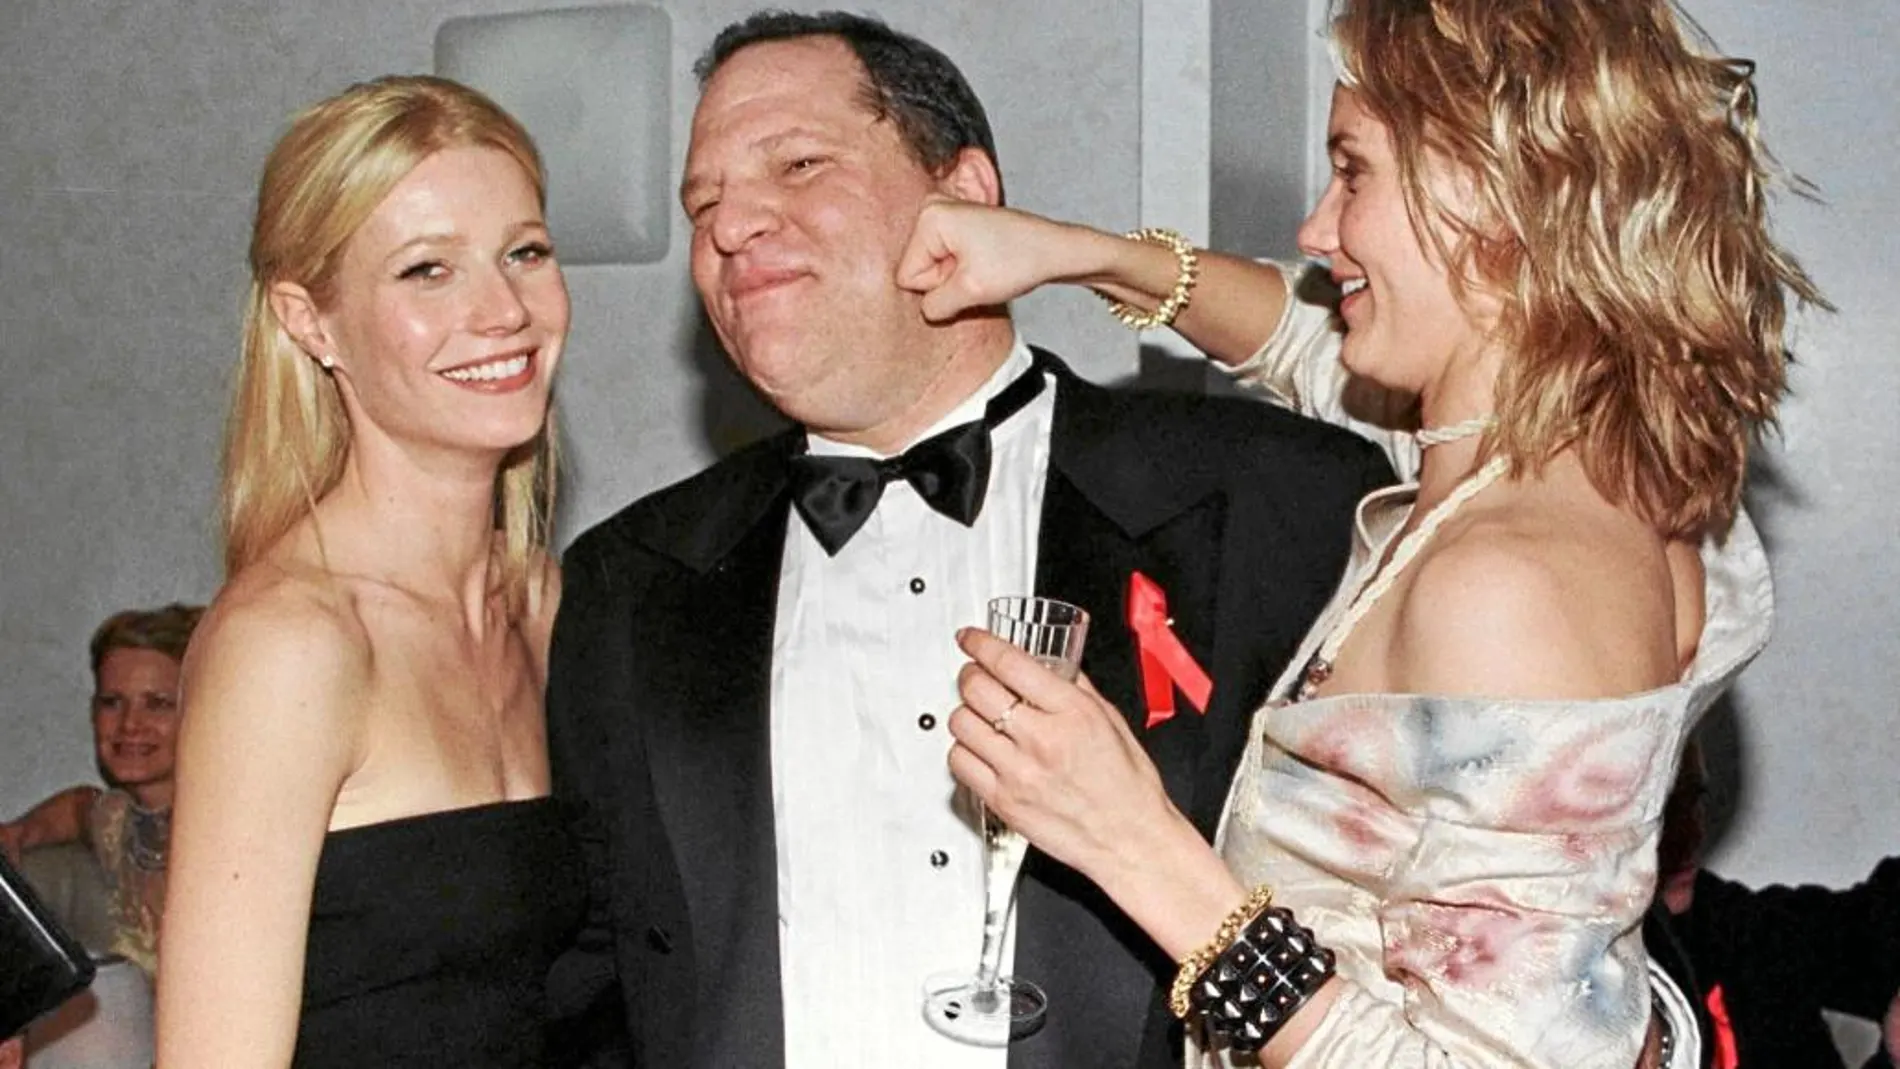 Harvey Weinsten, en la imagen acompañado por las actrices Gwyneth Paltrow (dcha.) y Cameron Díaz, es uno de los grandes productores de Hollywood